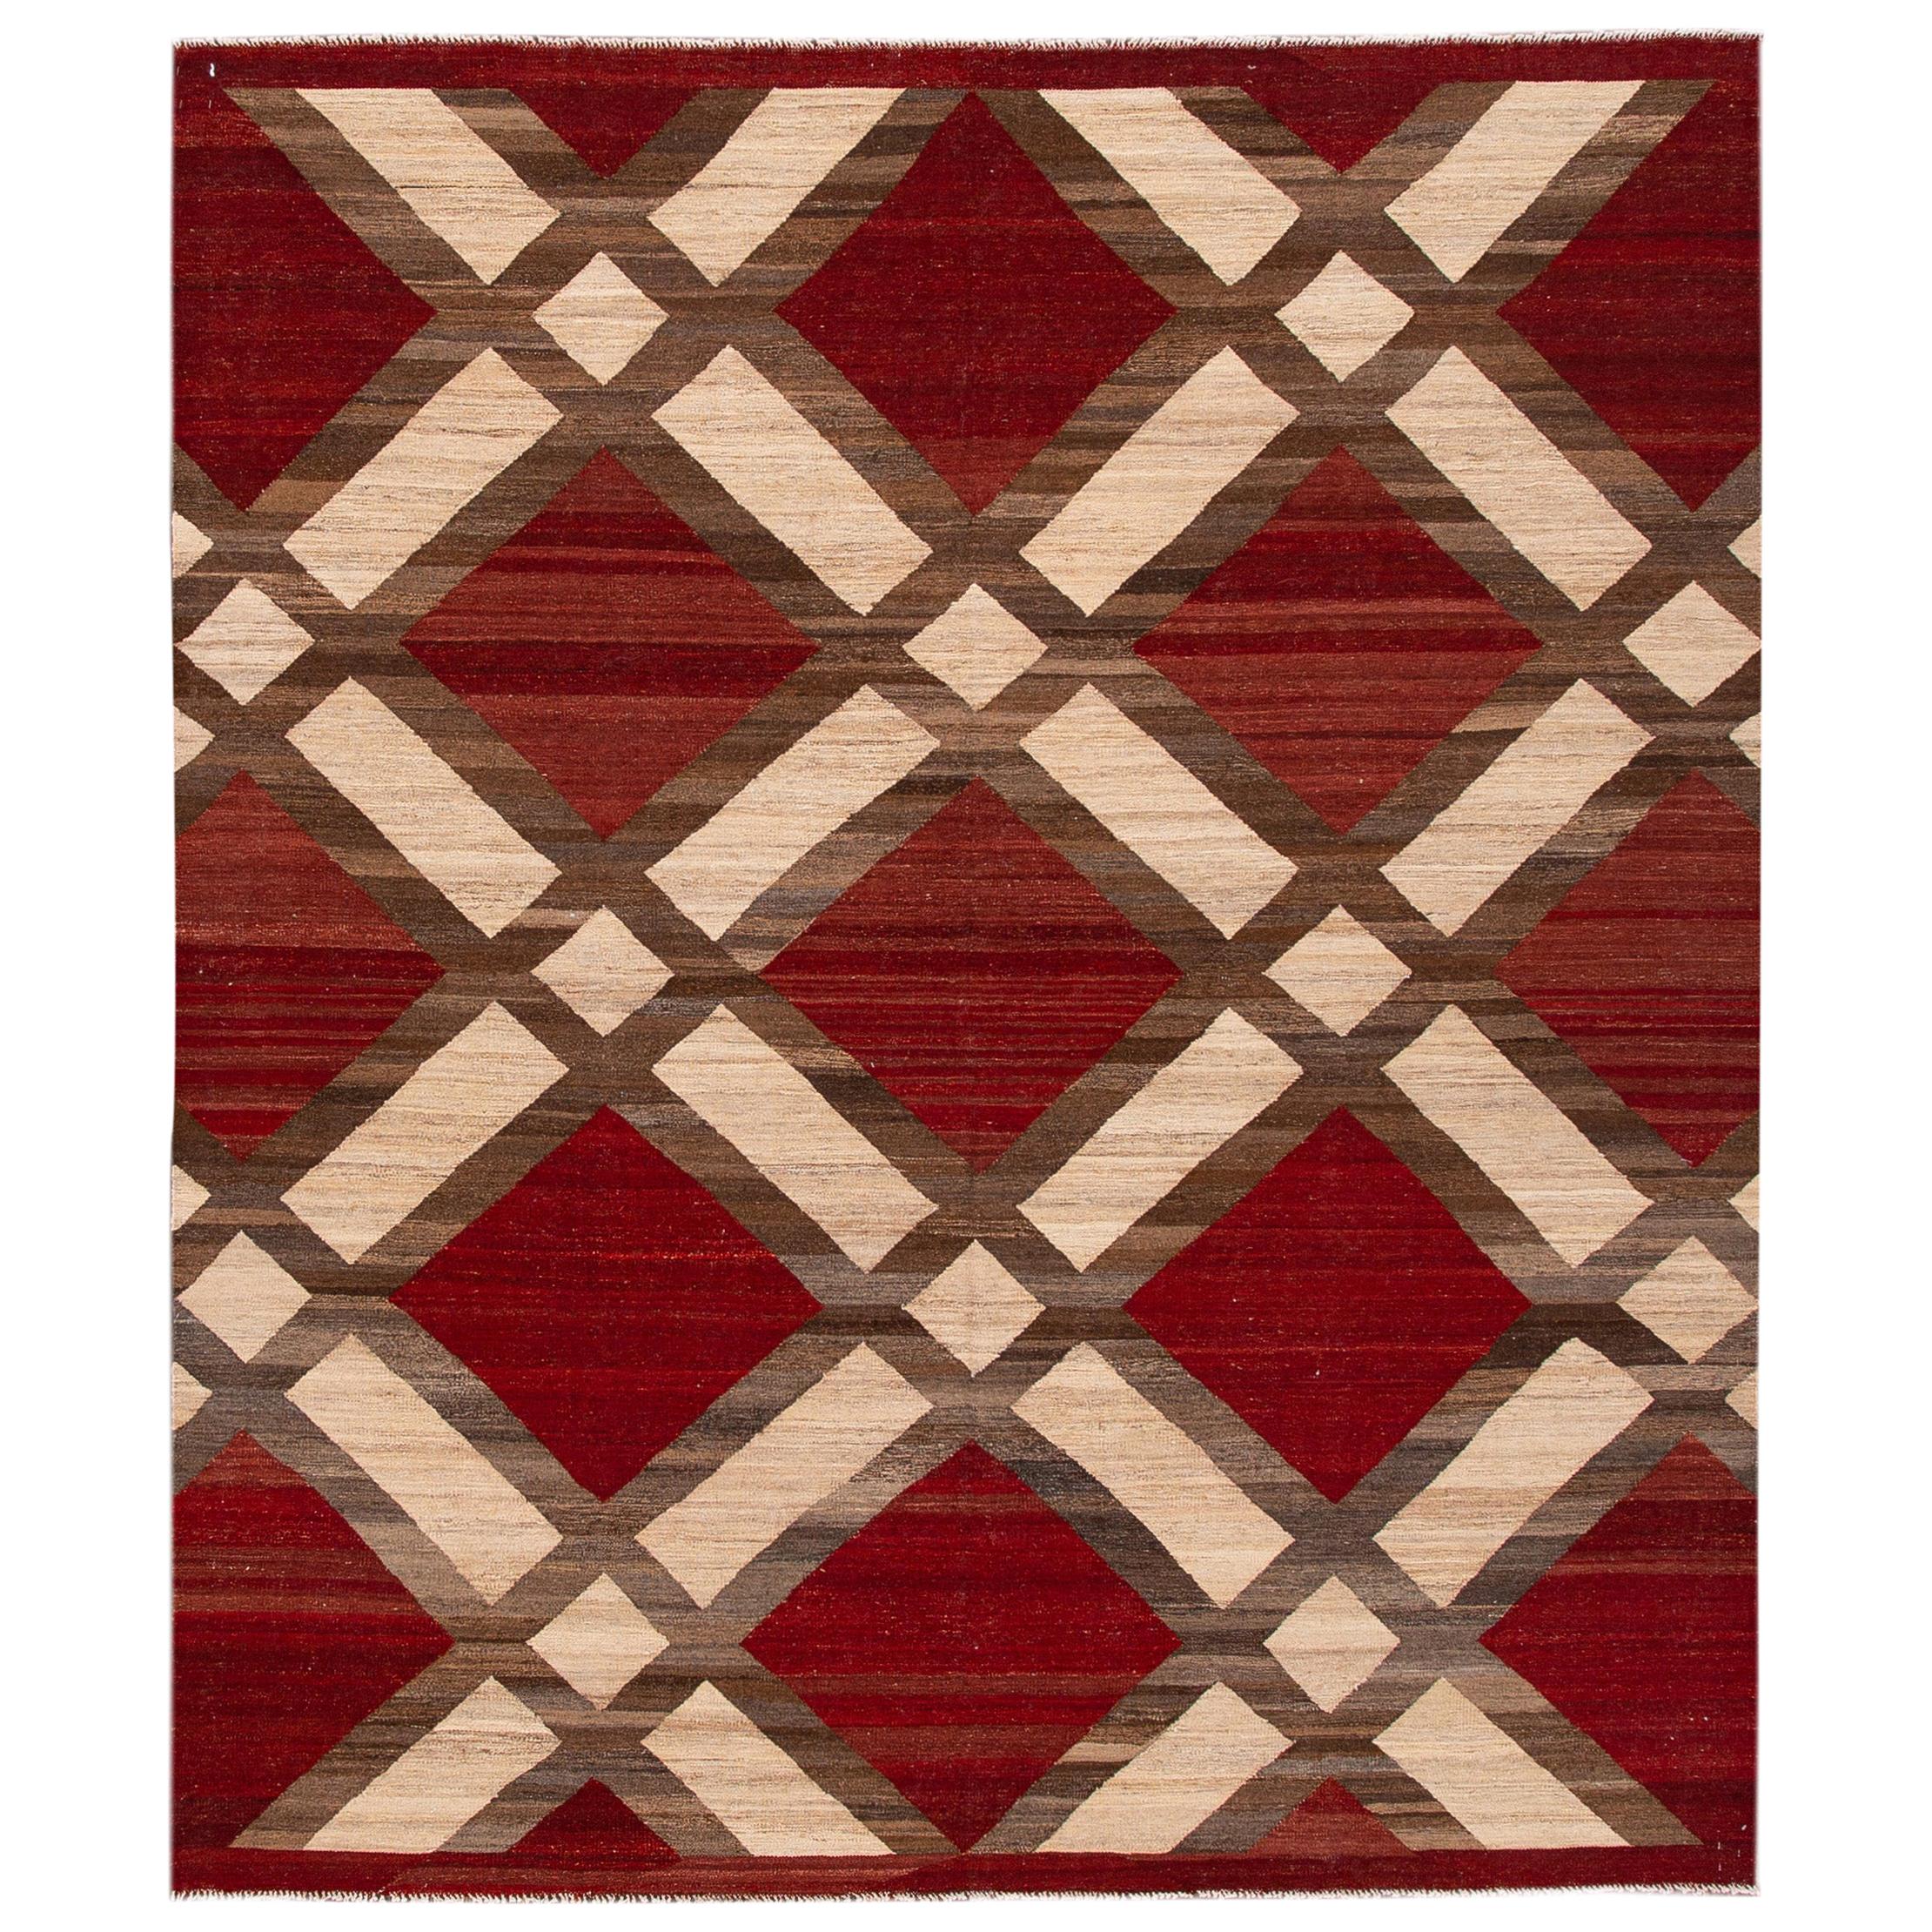 Modern Kilim Flatweave Red and Beige Geometric Wool Rug For Sale